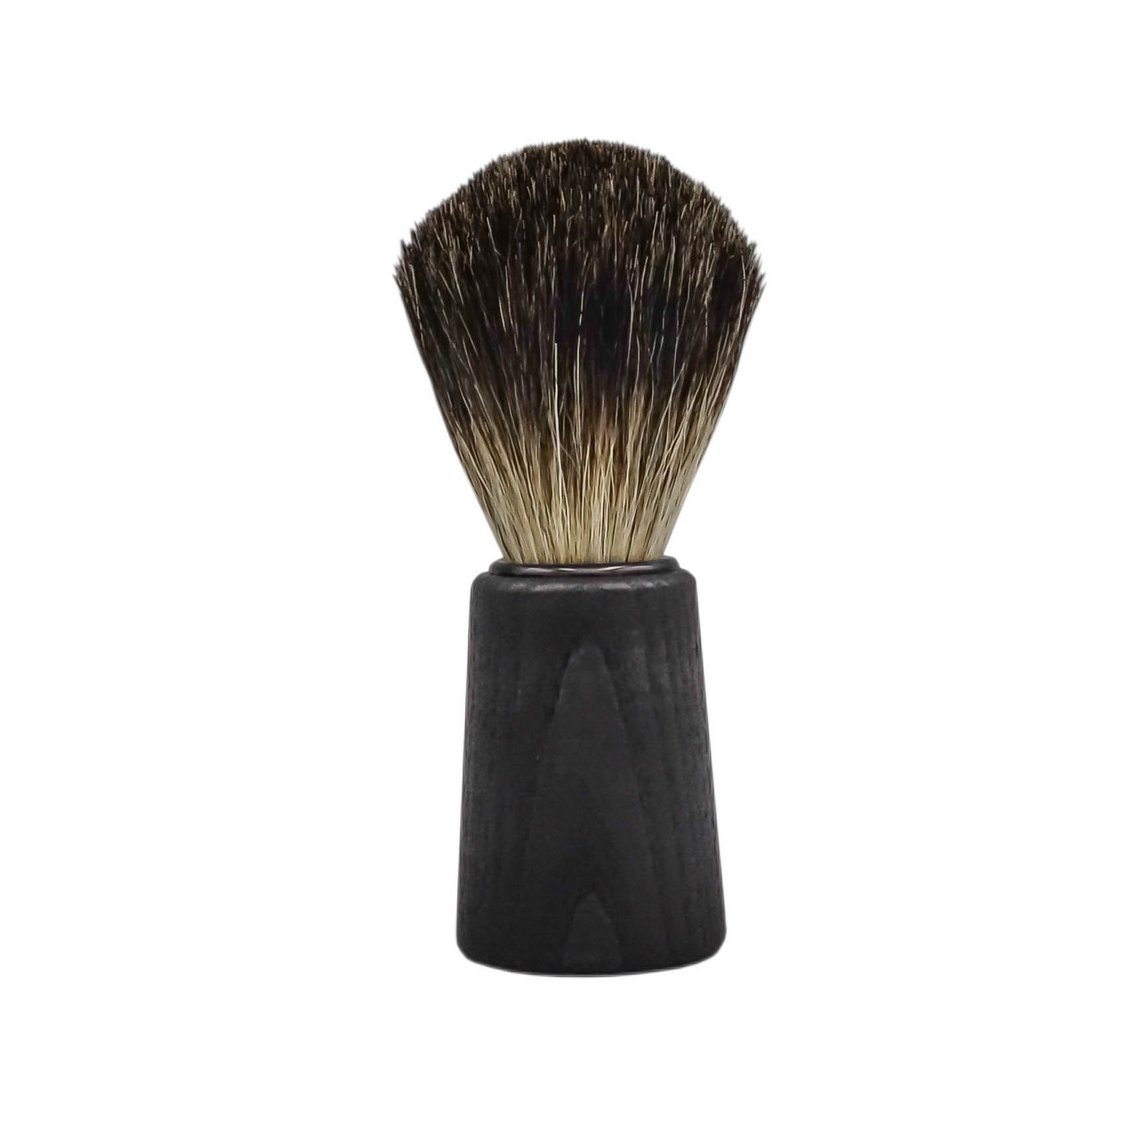 Shaving brush black badger black stained wood